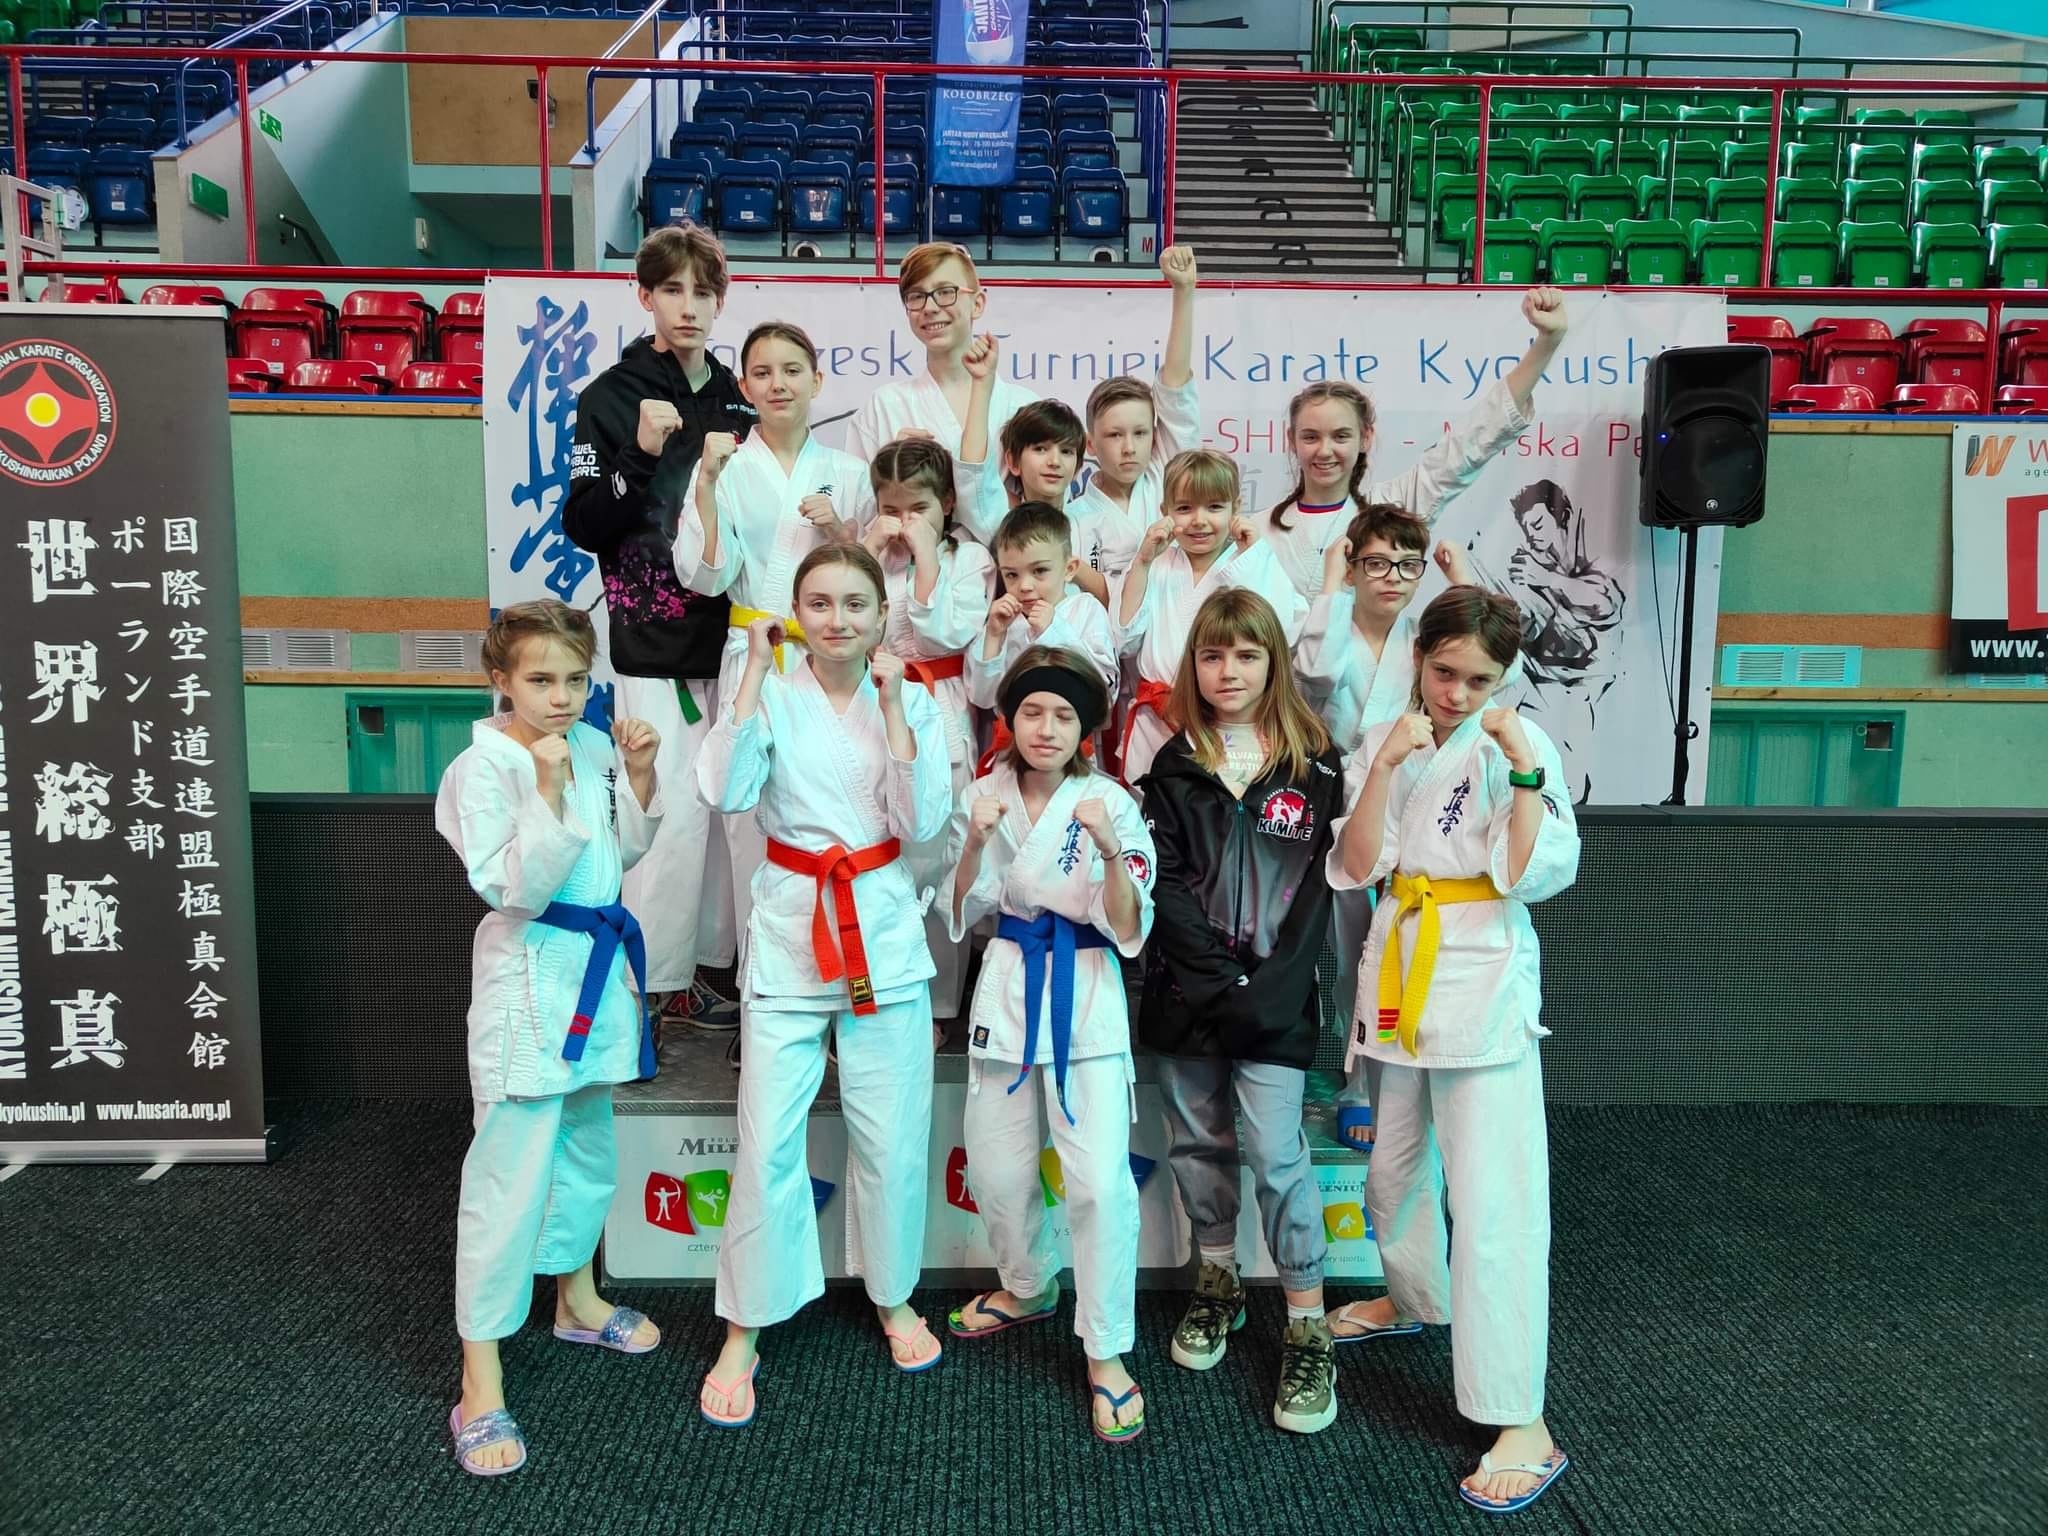 Turniej Kyokushin Morska Perła; Kołobrzeg; 09.04.2022